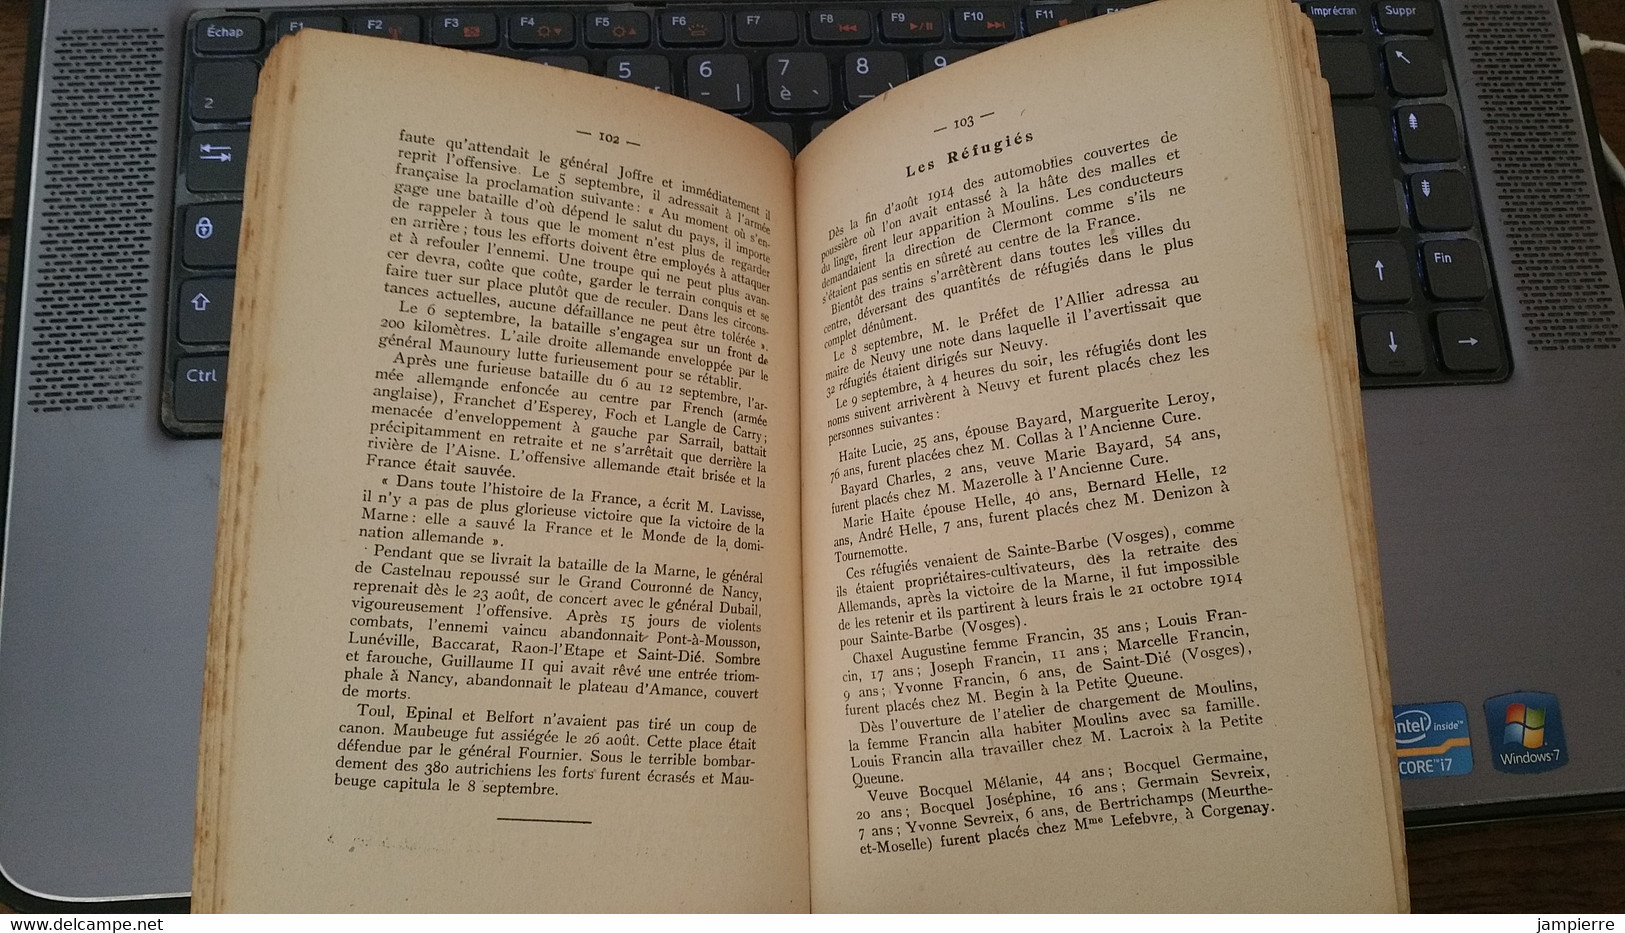 Neuvy (03, Allier) - Histoire De Neuvy Et De Ses Gentilhommières, Neuvy Pendant La Guerre - Chardeville - 1924 - Rare - Bourbonnais